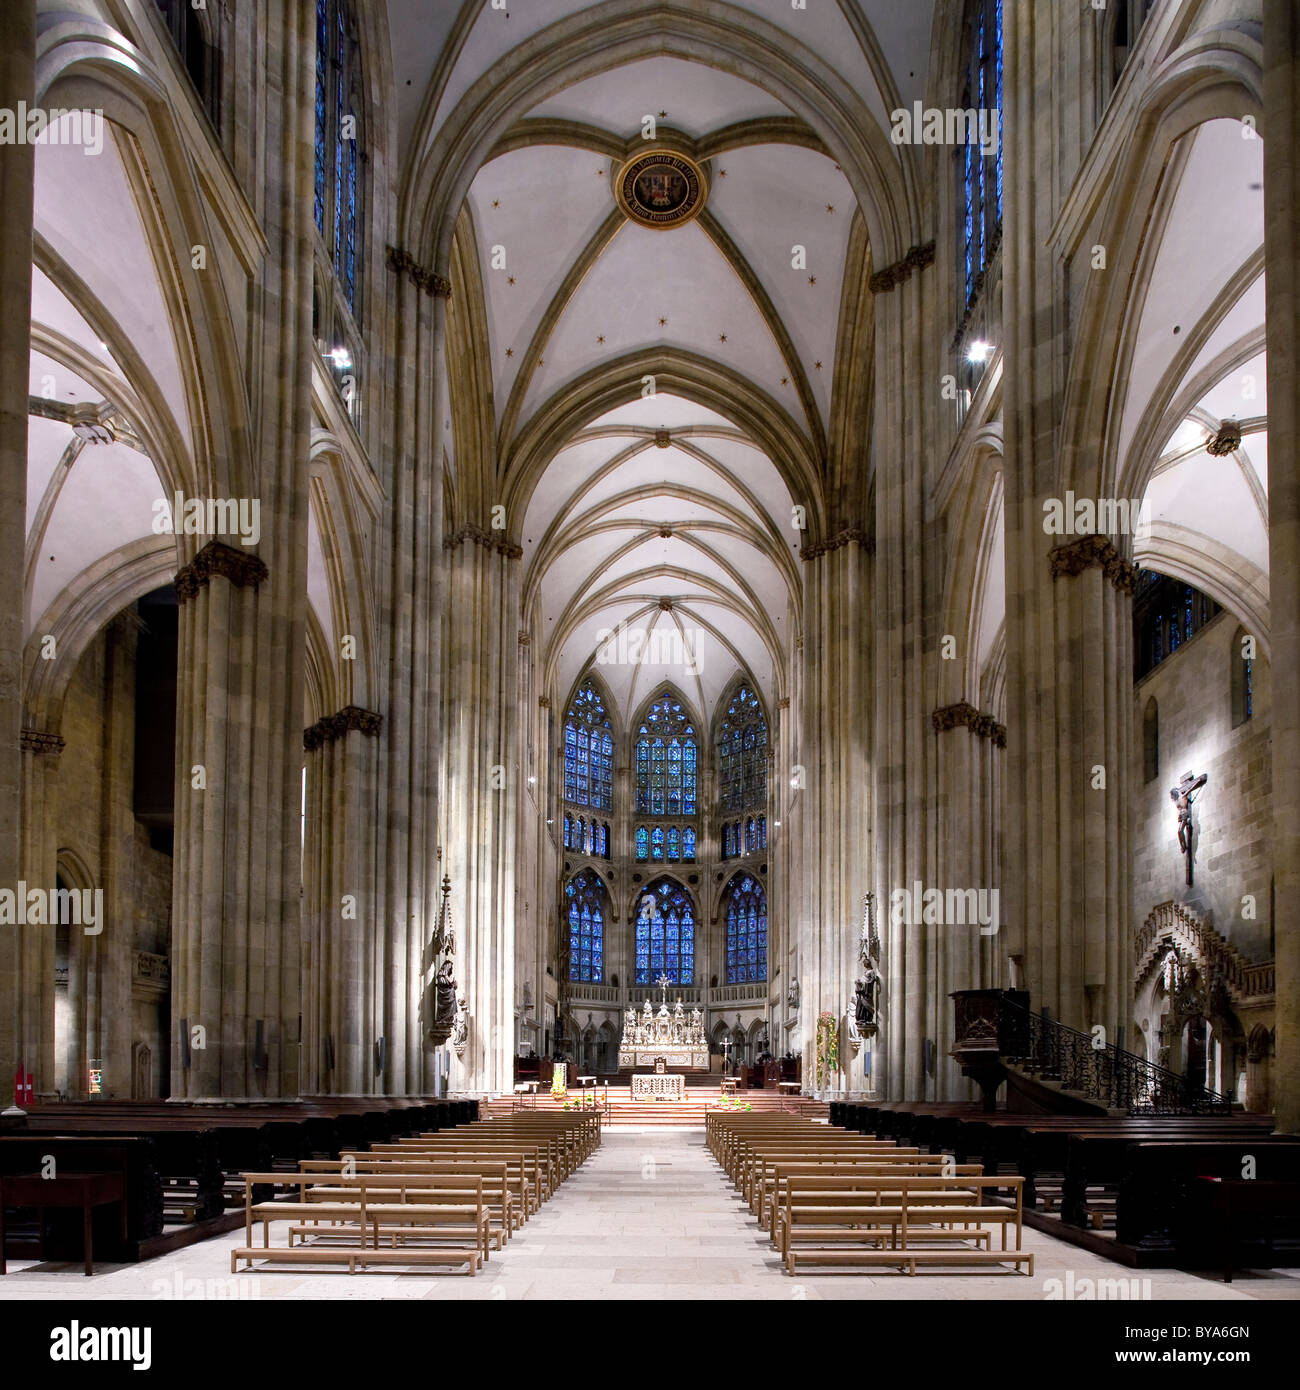 L'intérieur, la cathédrale de Regensburg, UNESCO World Heritage Site, Regensburg, Bavière, Allemagne, Europe Banque D'Images